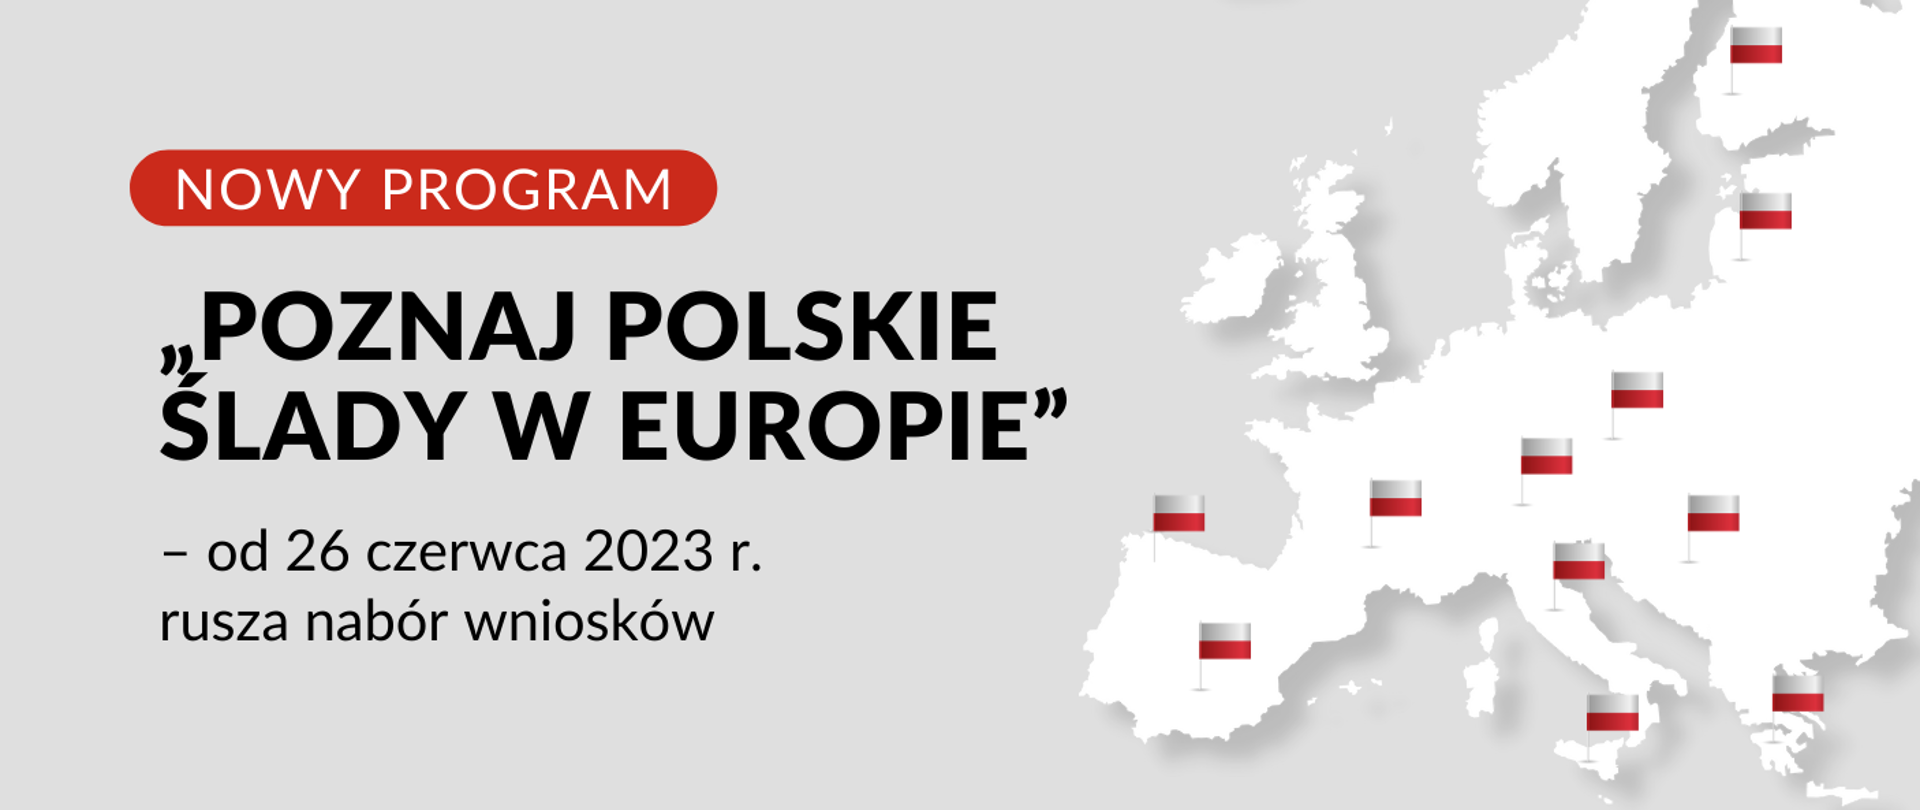 Grafika - na szarym tle schematyczna mapa Europy i napis Nowy program - "Poznaj polskie ślady w Europie".